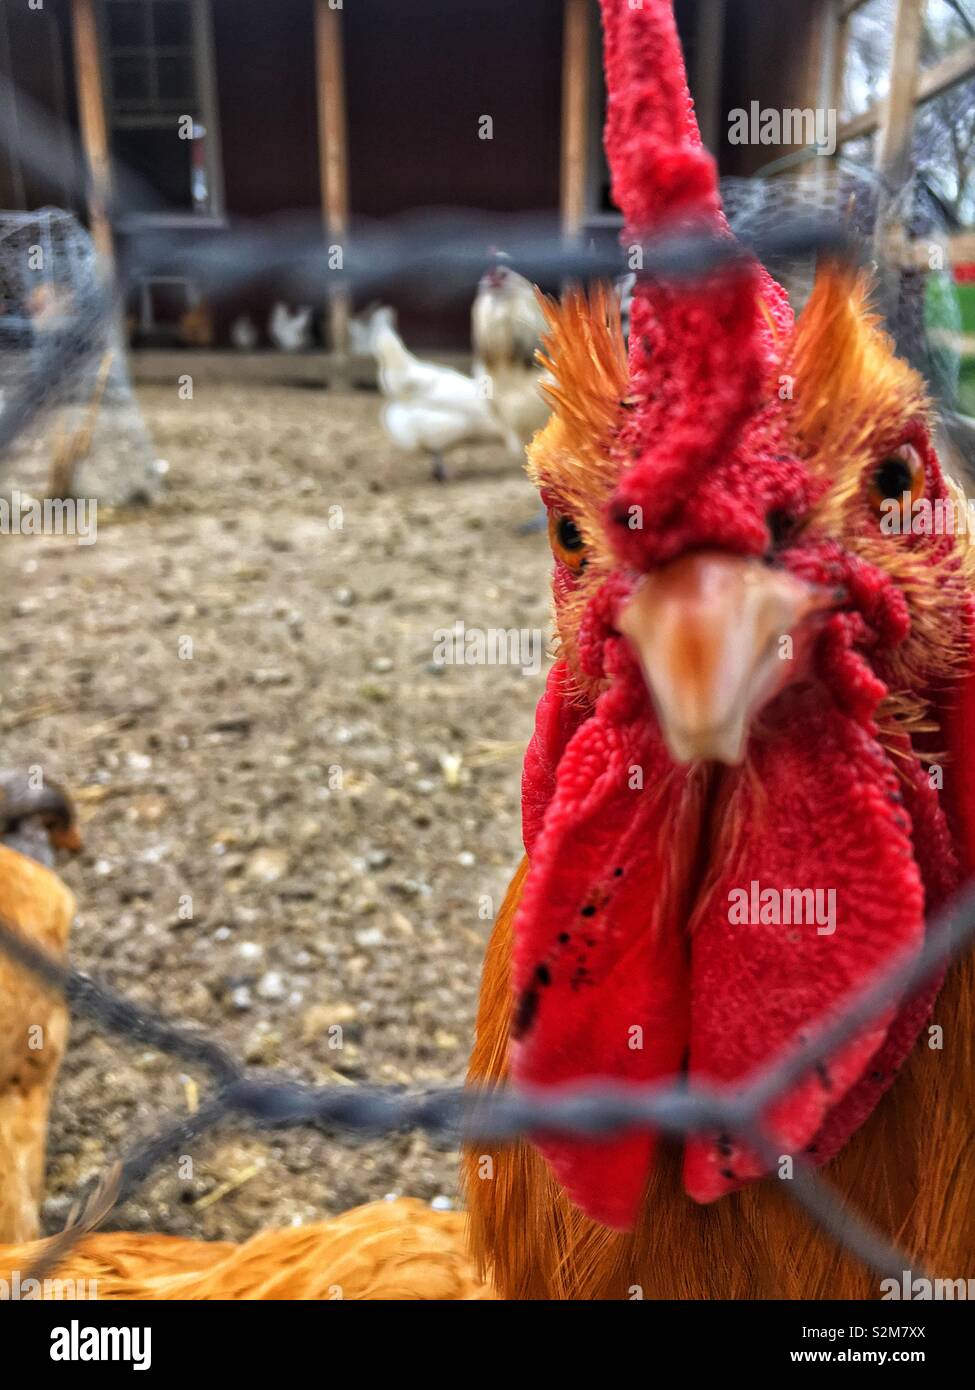 Schöne und gesunde freie Hühner roaming um ihre Hähnchen Draht beigefügten Stift und der Hahn ist auf der Suche in die Kamera. Stockfoto